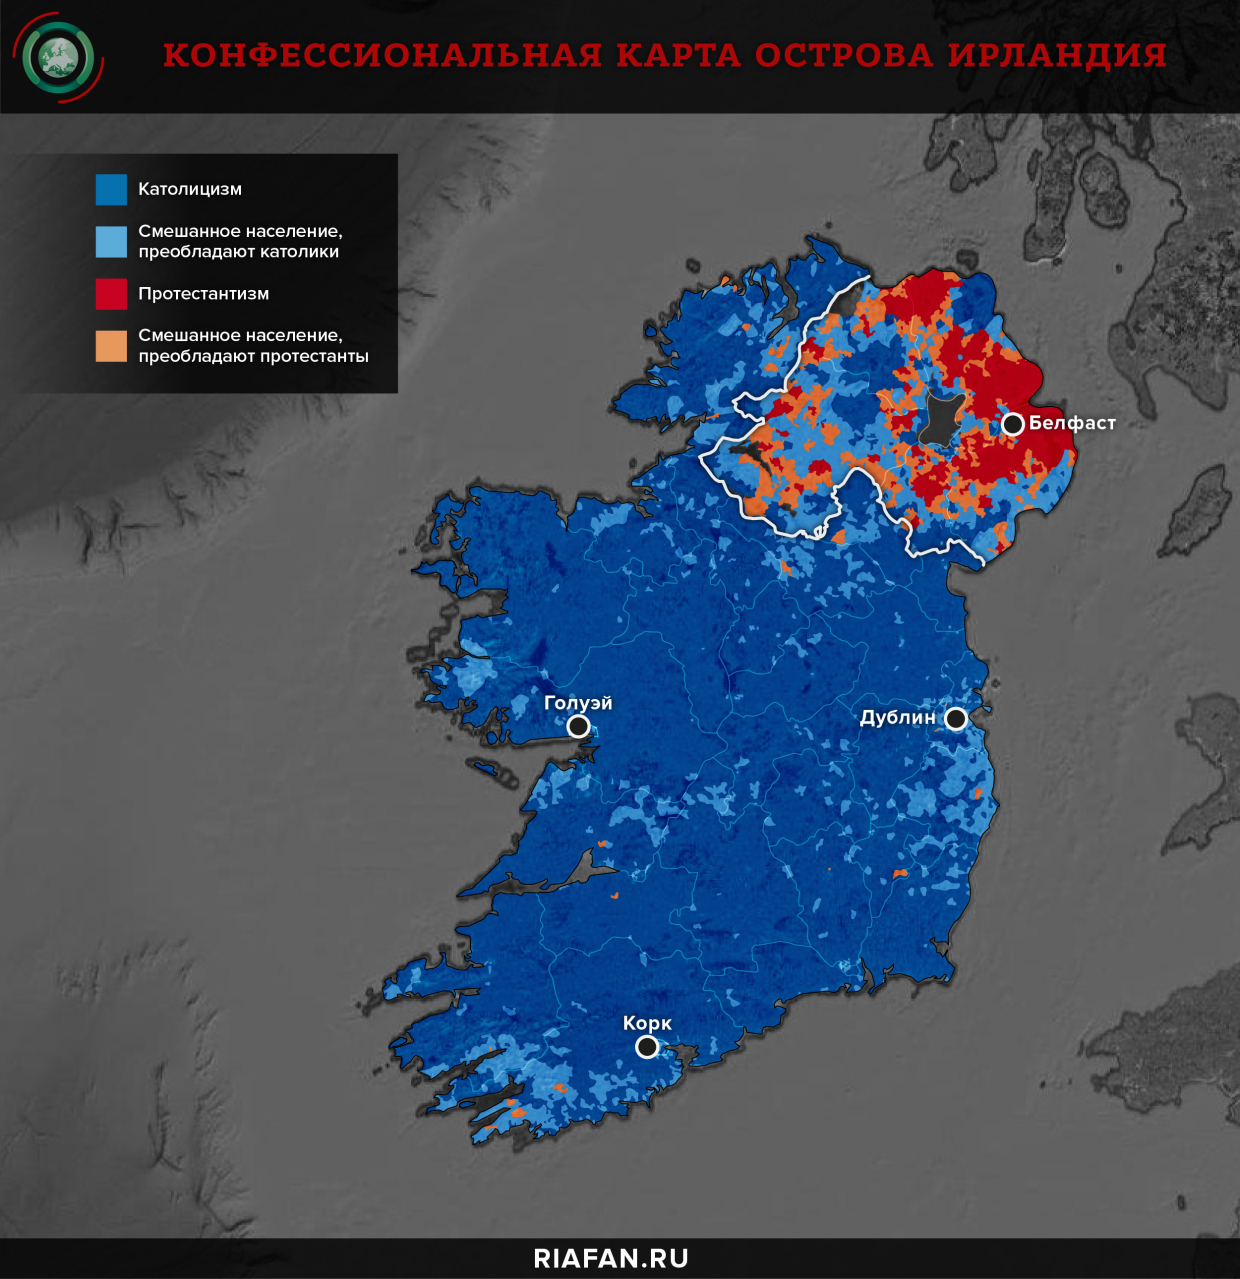 Конфессиональная карта острова Ирландия